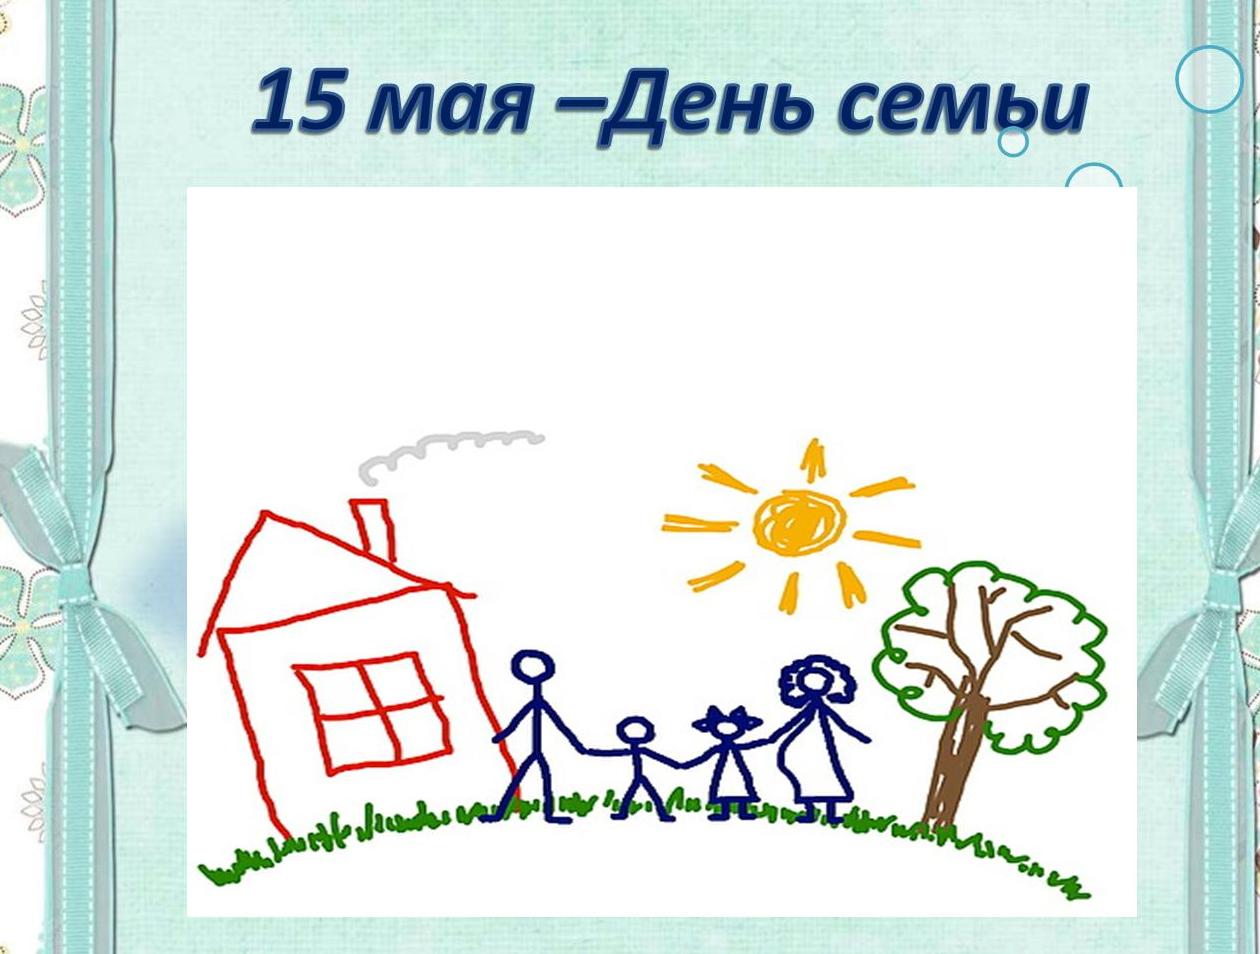 Рисунки ко Дню семьи 15 мая